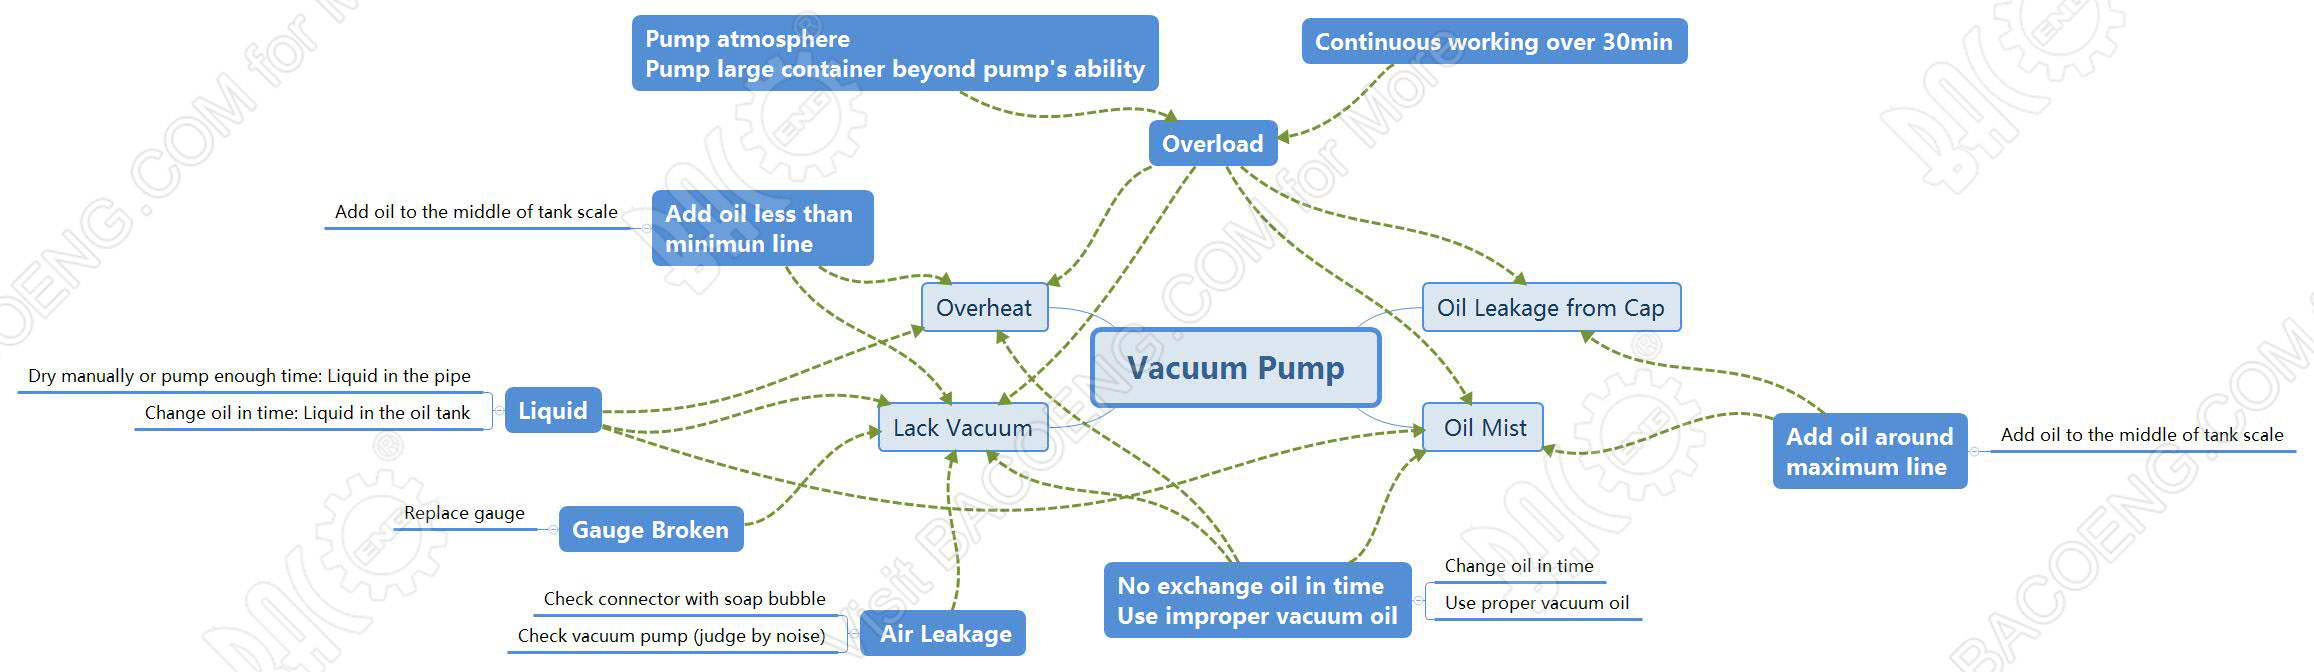 Vacuum_Pump_FAQ.jpg